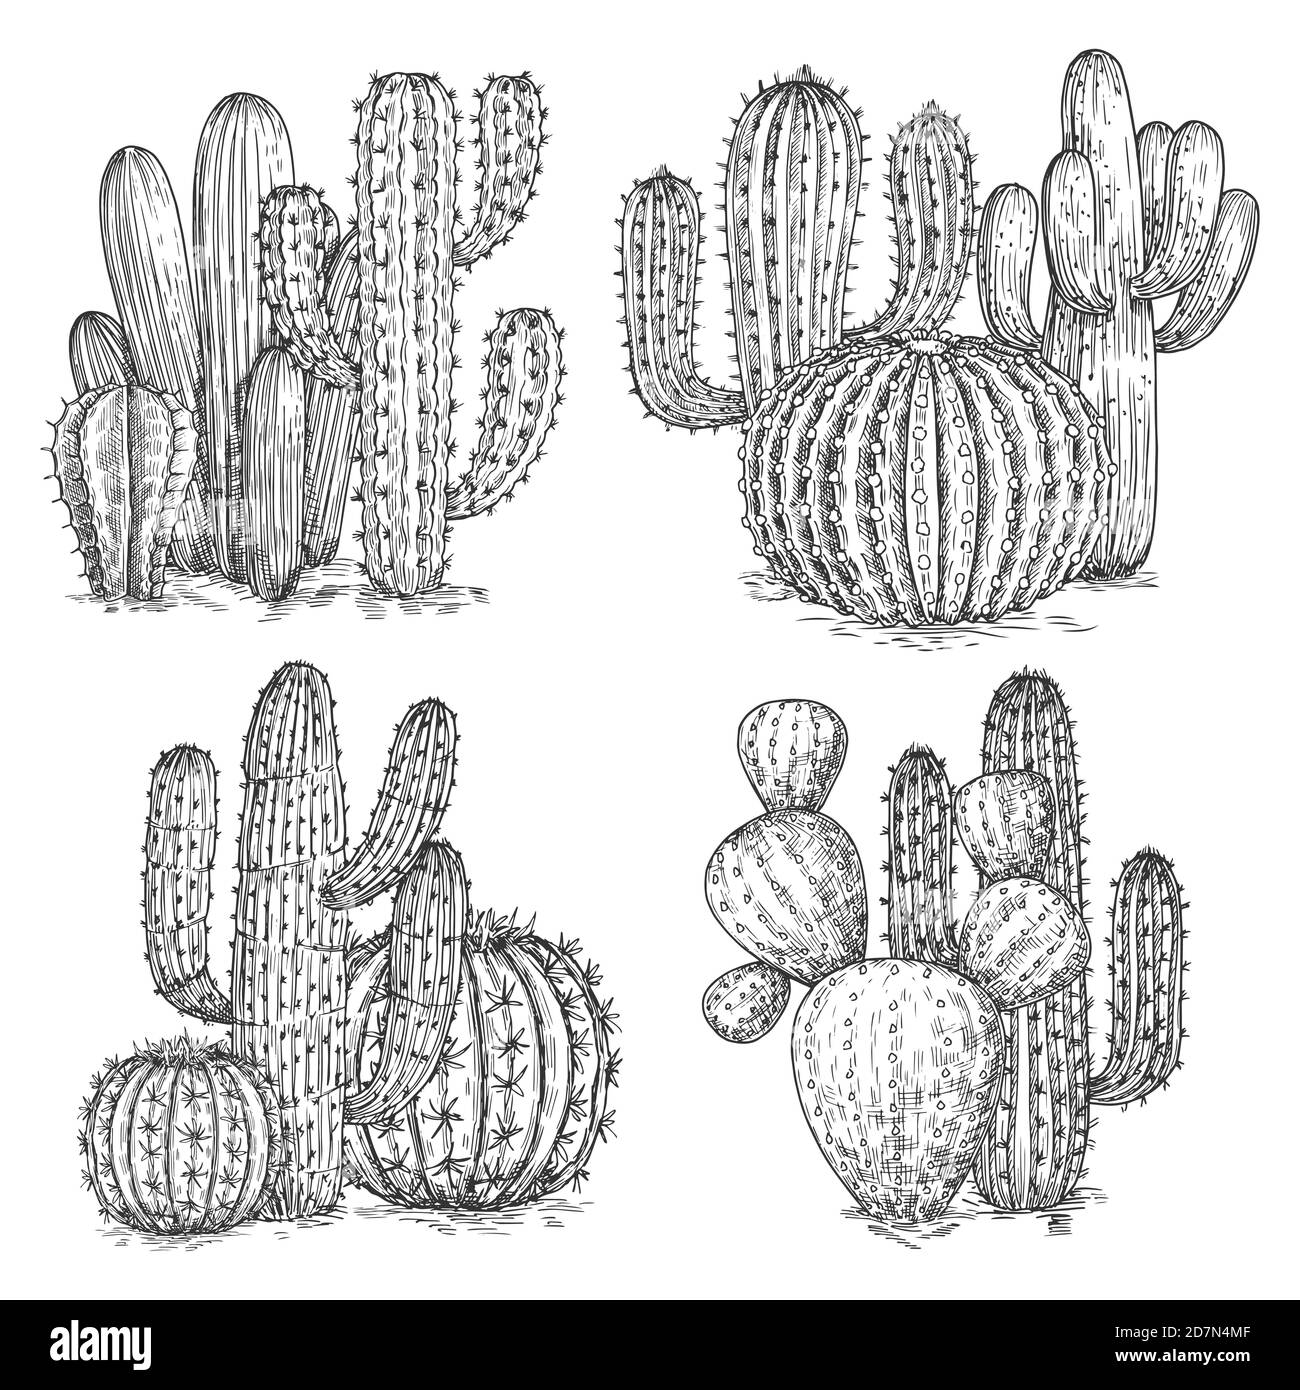 Illustrazione vettoriale del cactus disegnata a mano. Composizioni di fiori del deserto isolate su sfondo bianco. Illustrazione di cactus messicani, pianta di schizzo Illustrazione Vettoriale